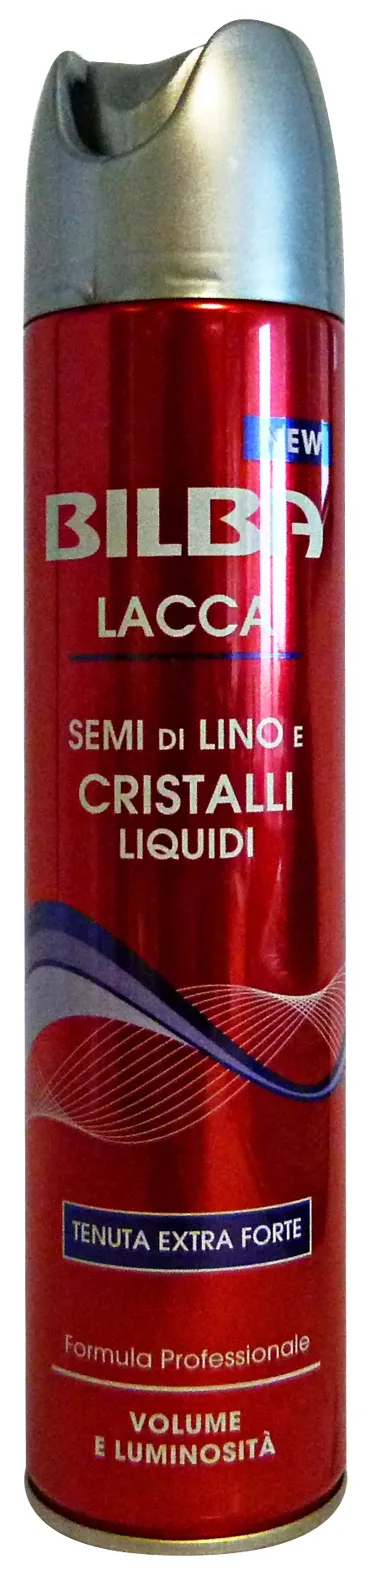 "BILBA Lacca lino/crist.liq.extra forte 250 ml. - Lacca per capelli"